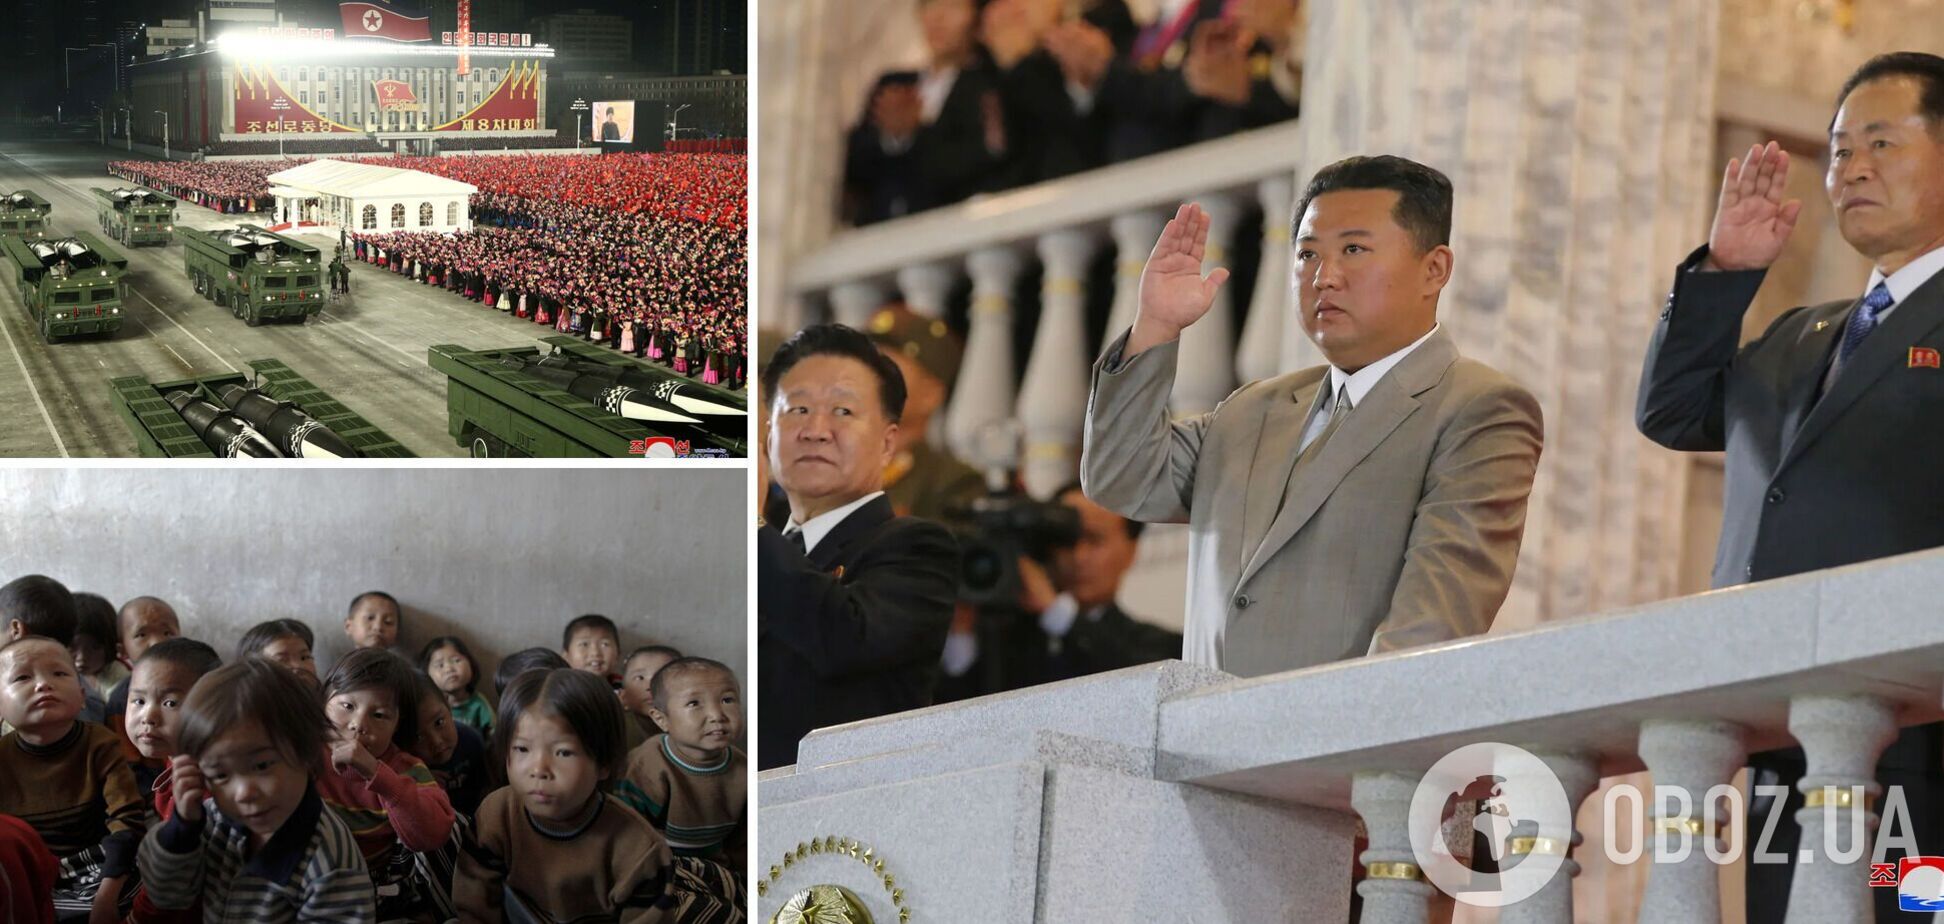 КНДР оказалась на грани массового голода, но Ким Чен Ын не решает эту проблему